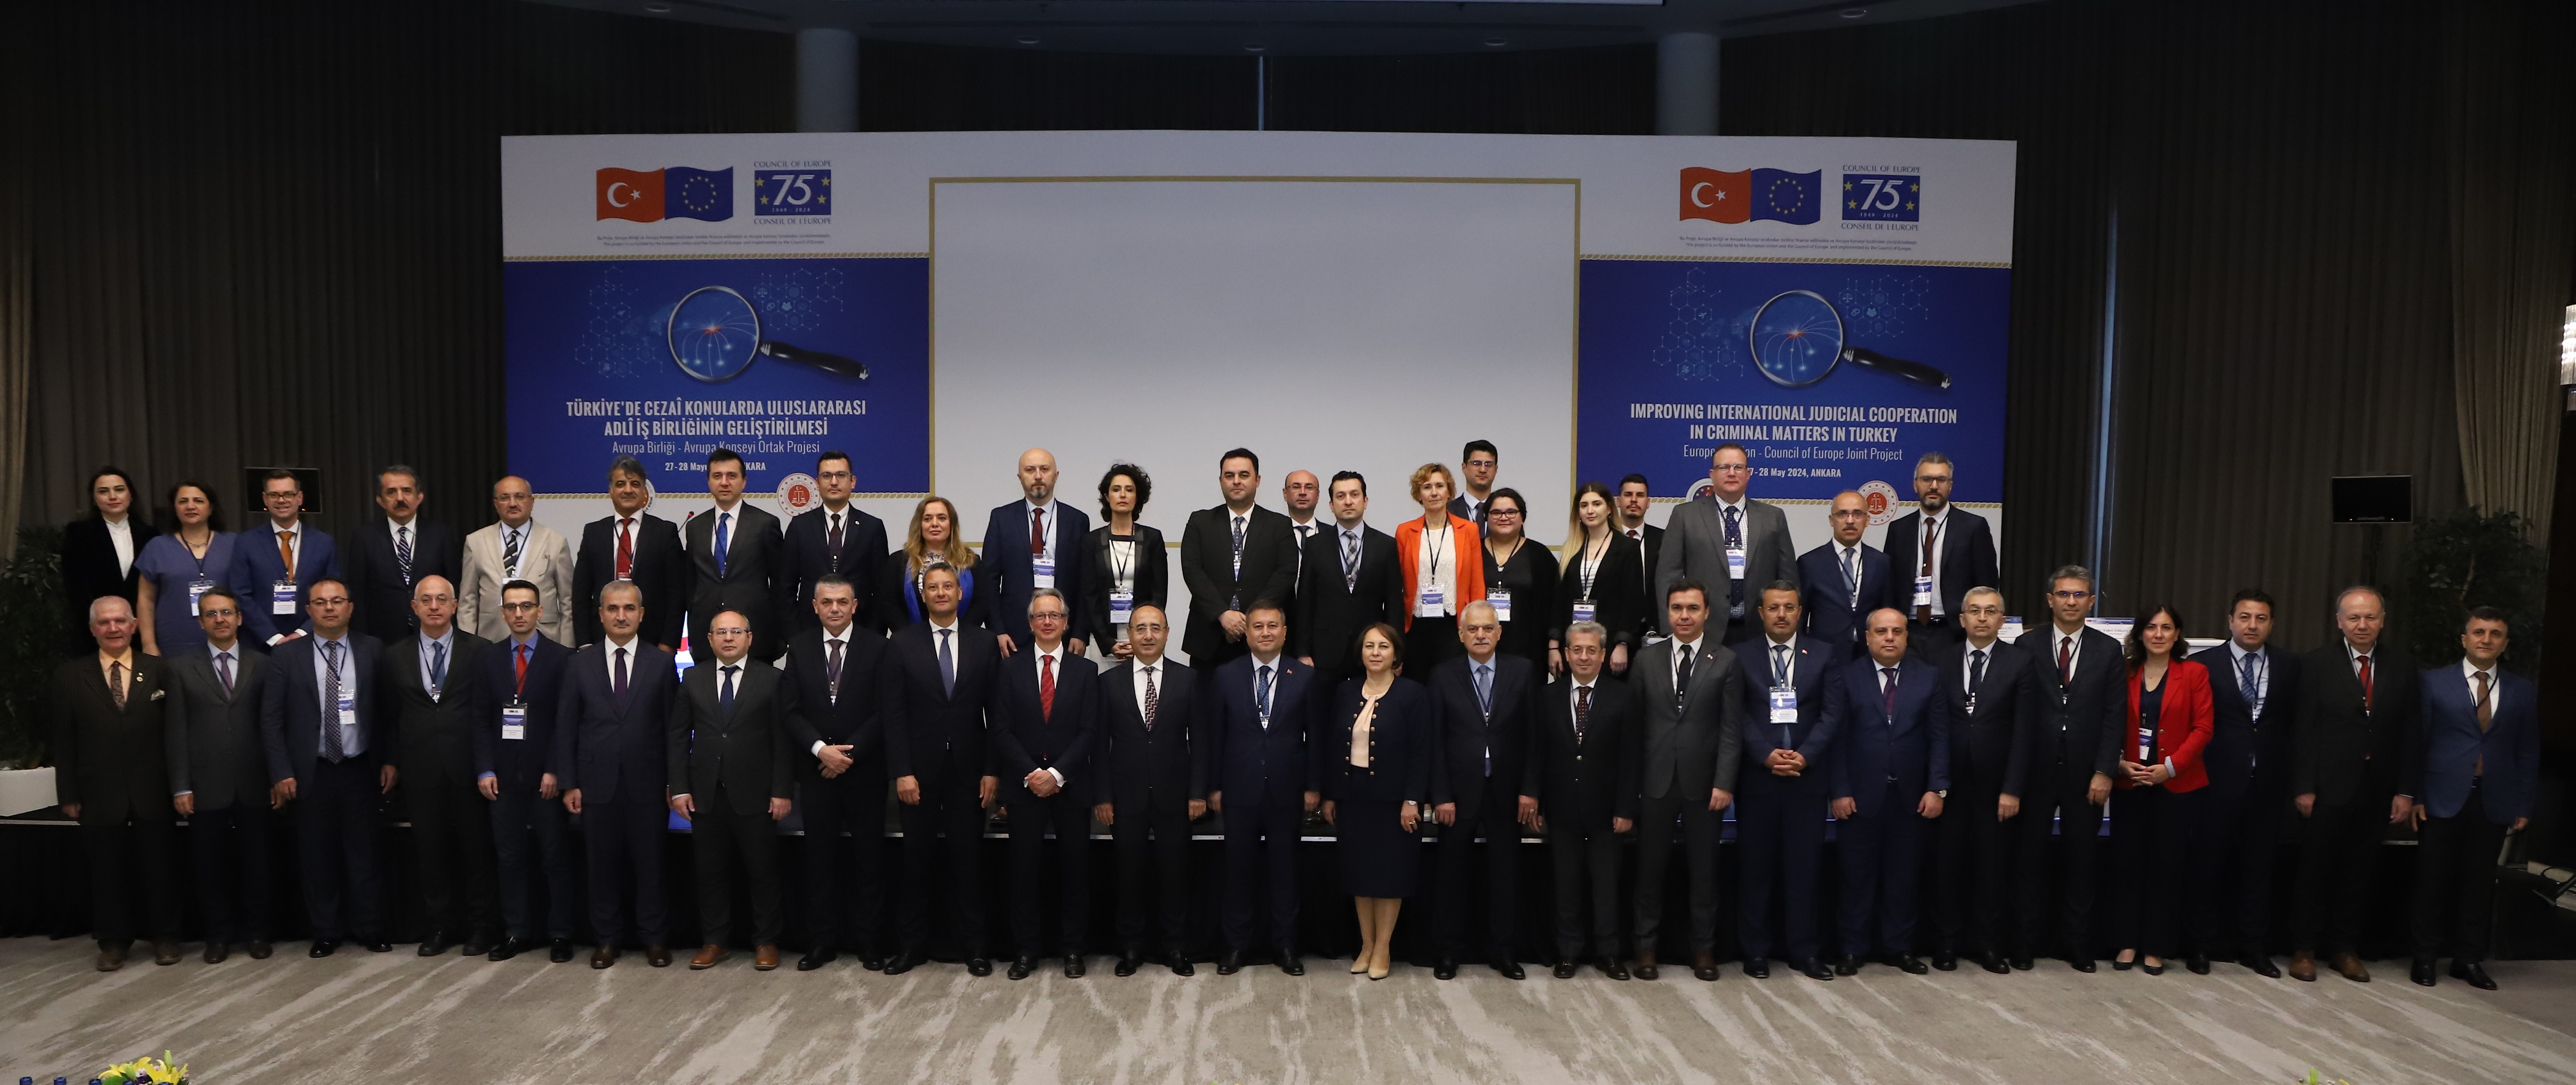 Türkiye cezaî konularda uluslararası adlî iş birliği konferansına ev sahipliği yaptı